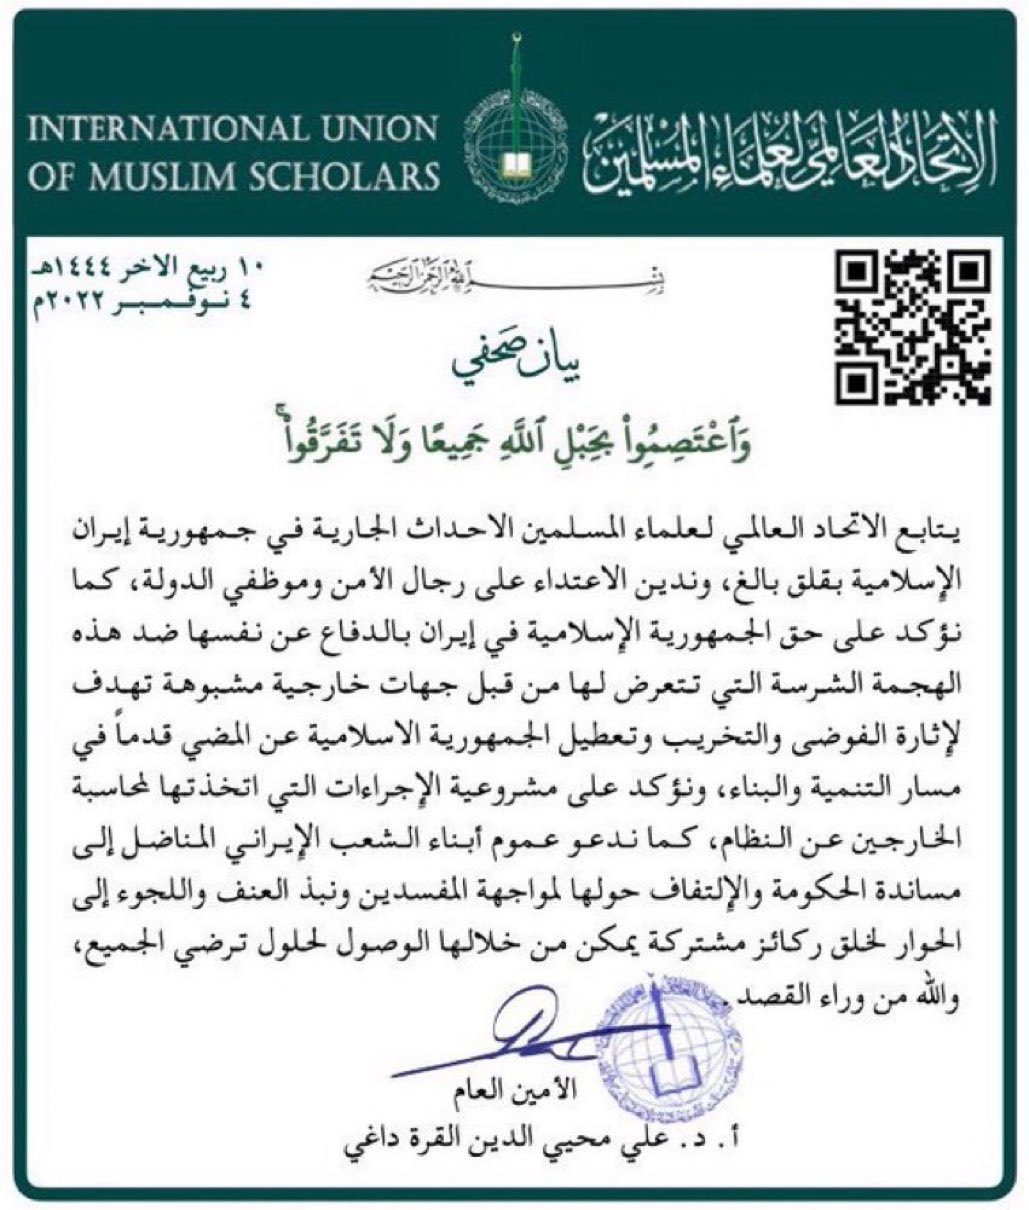 "الاتحاد العالمي لعلماء المسلمين" الاعتداء على رجال الأمن في إيران